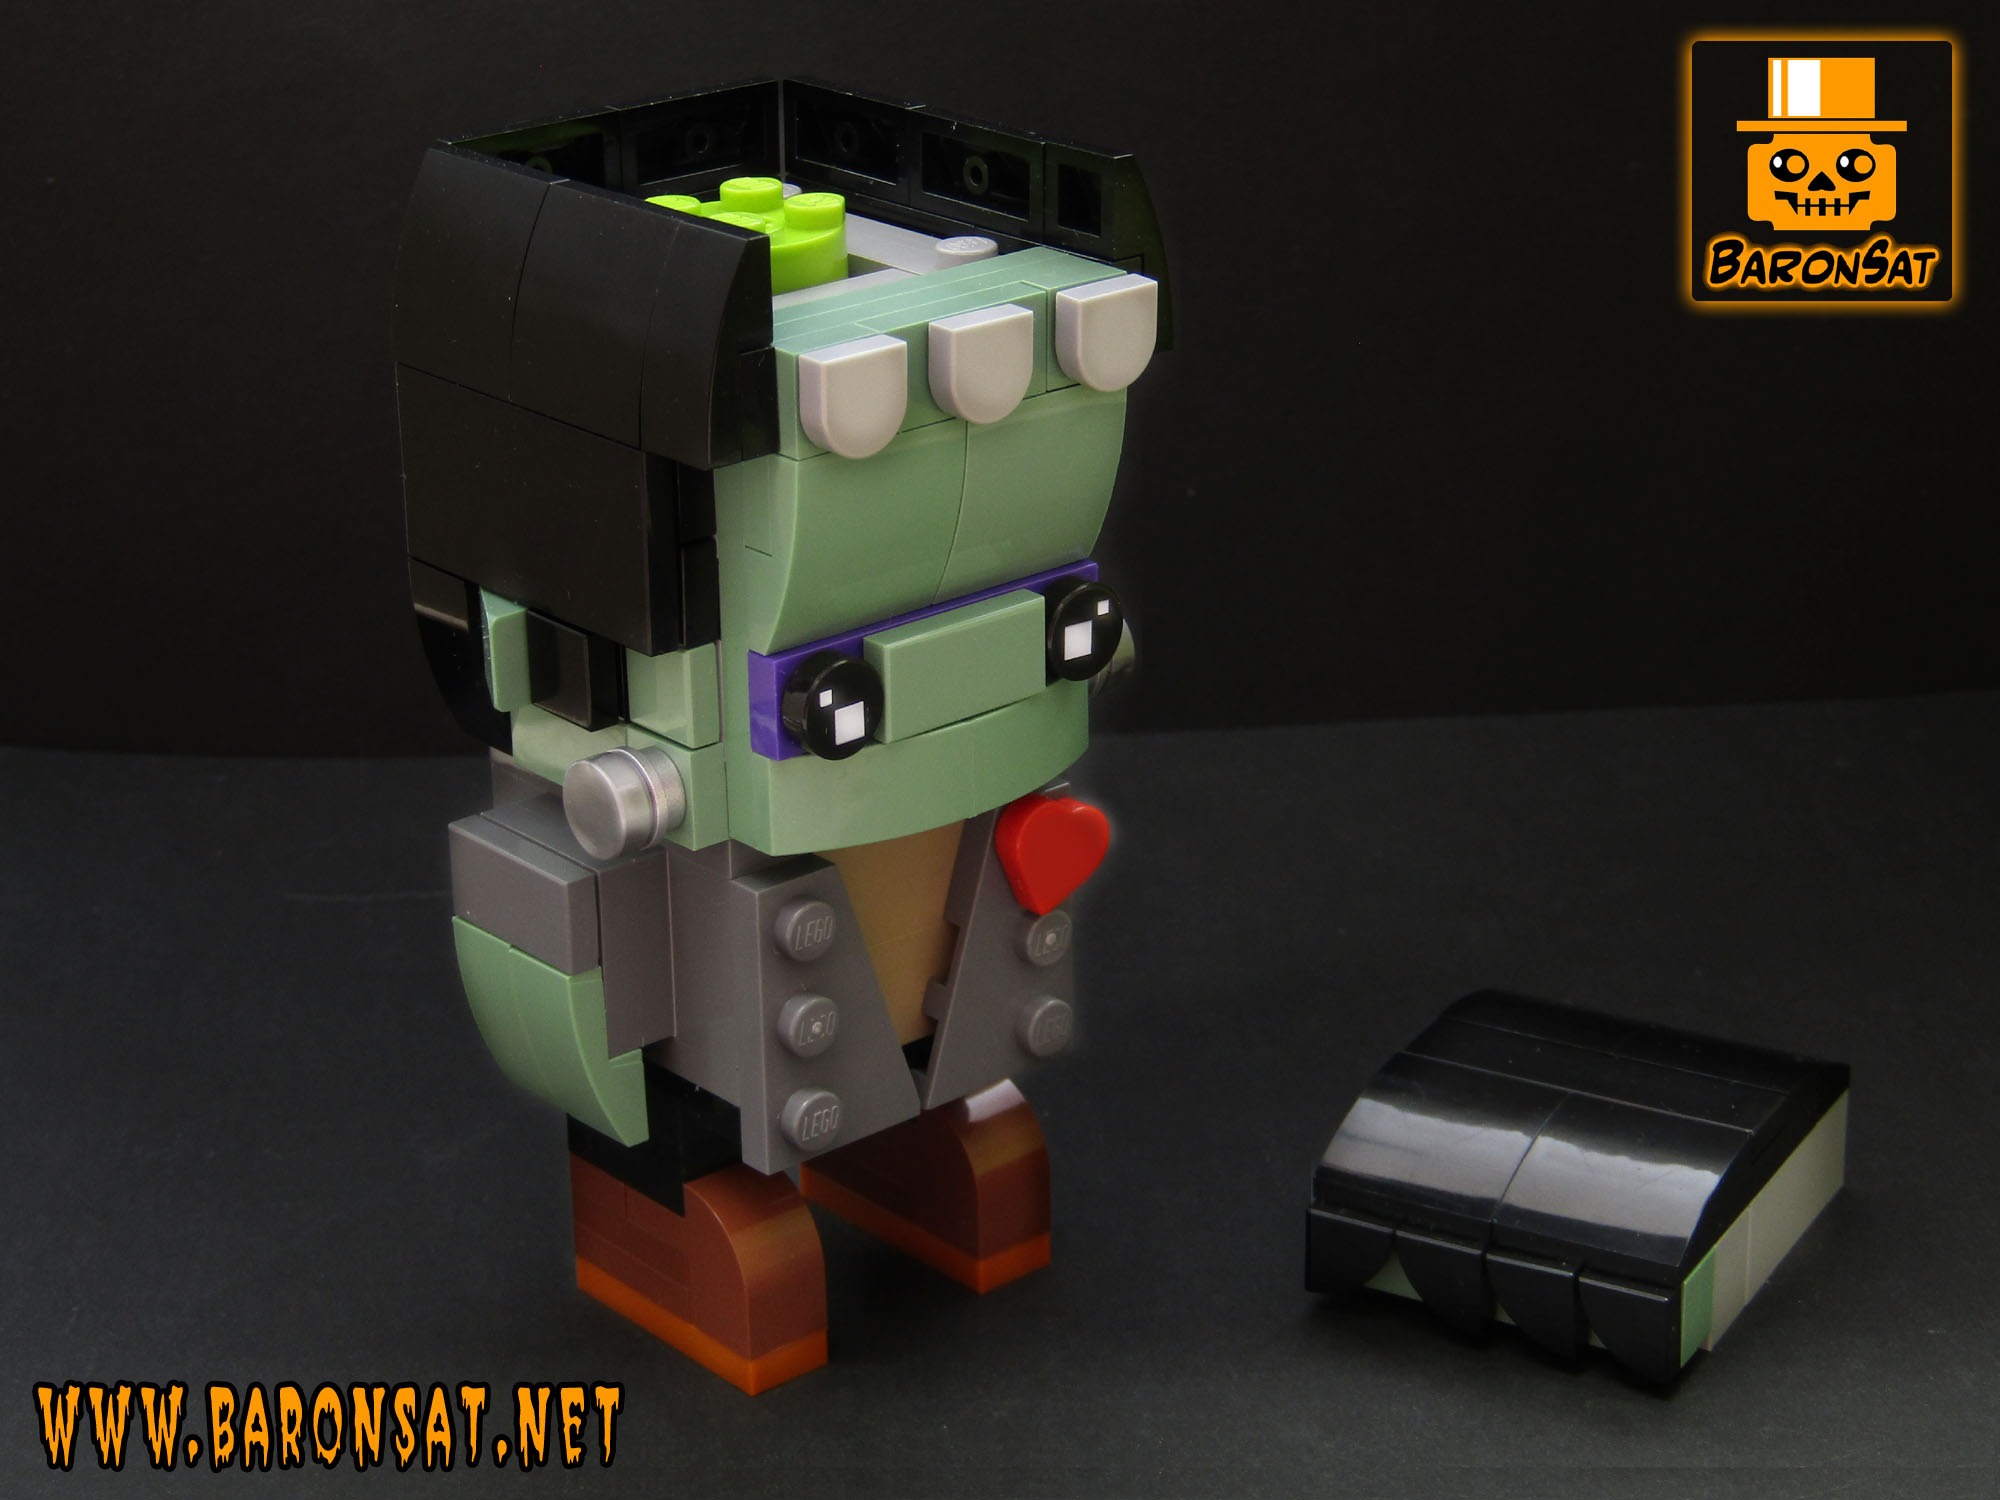 Frankenstein's monster Lego moc custom Brickheadz open skull